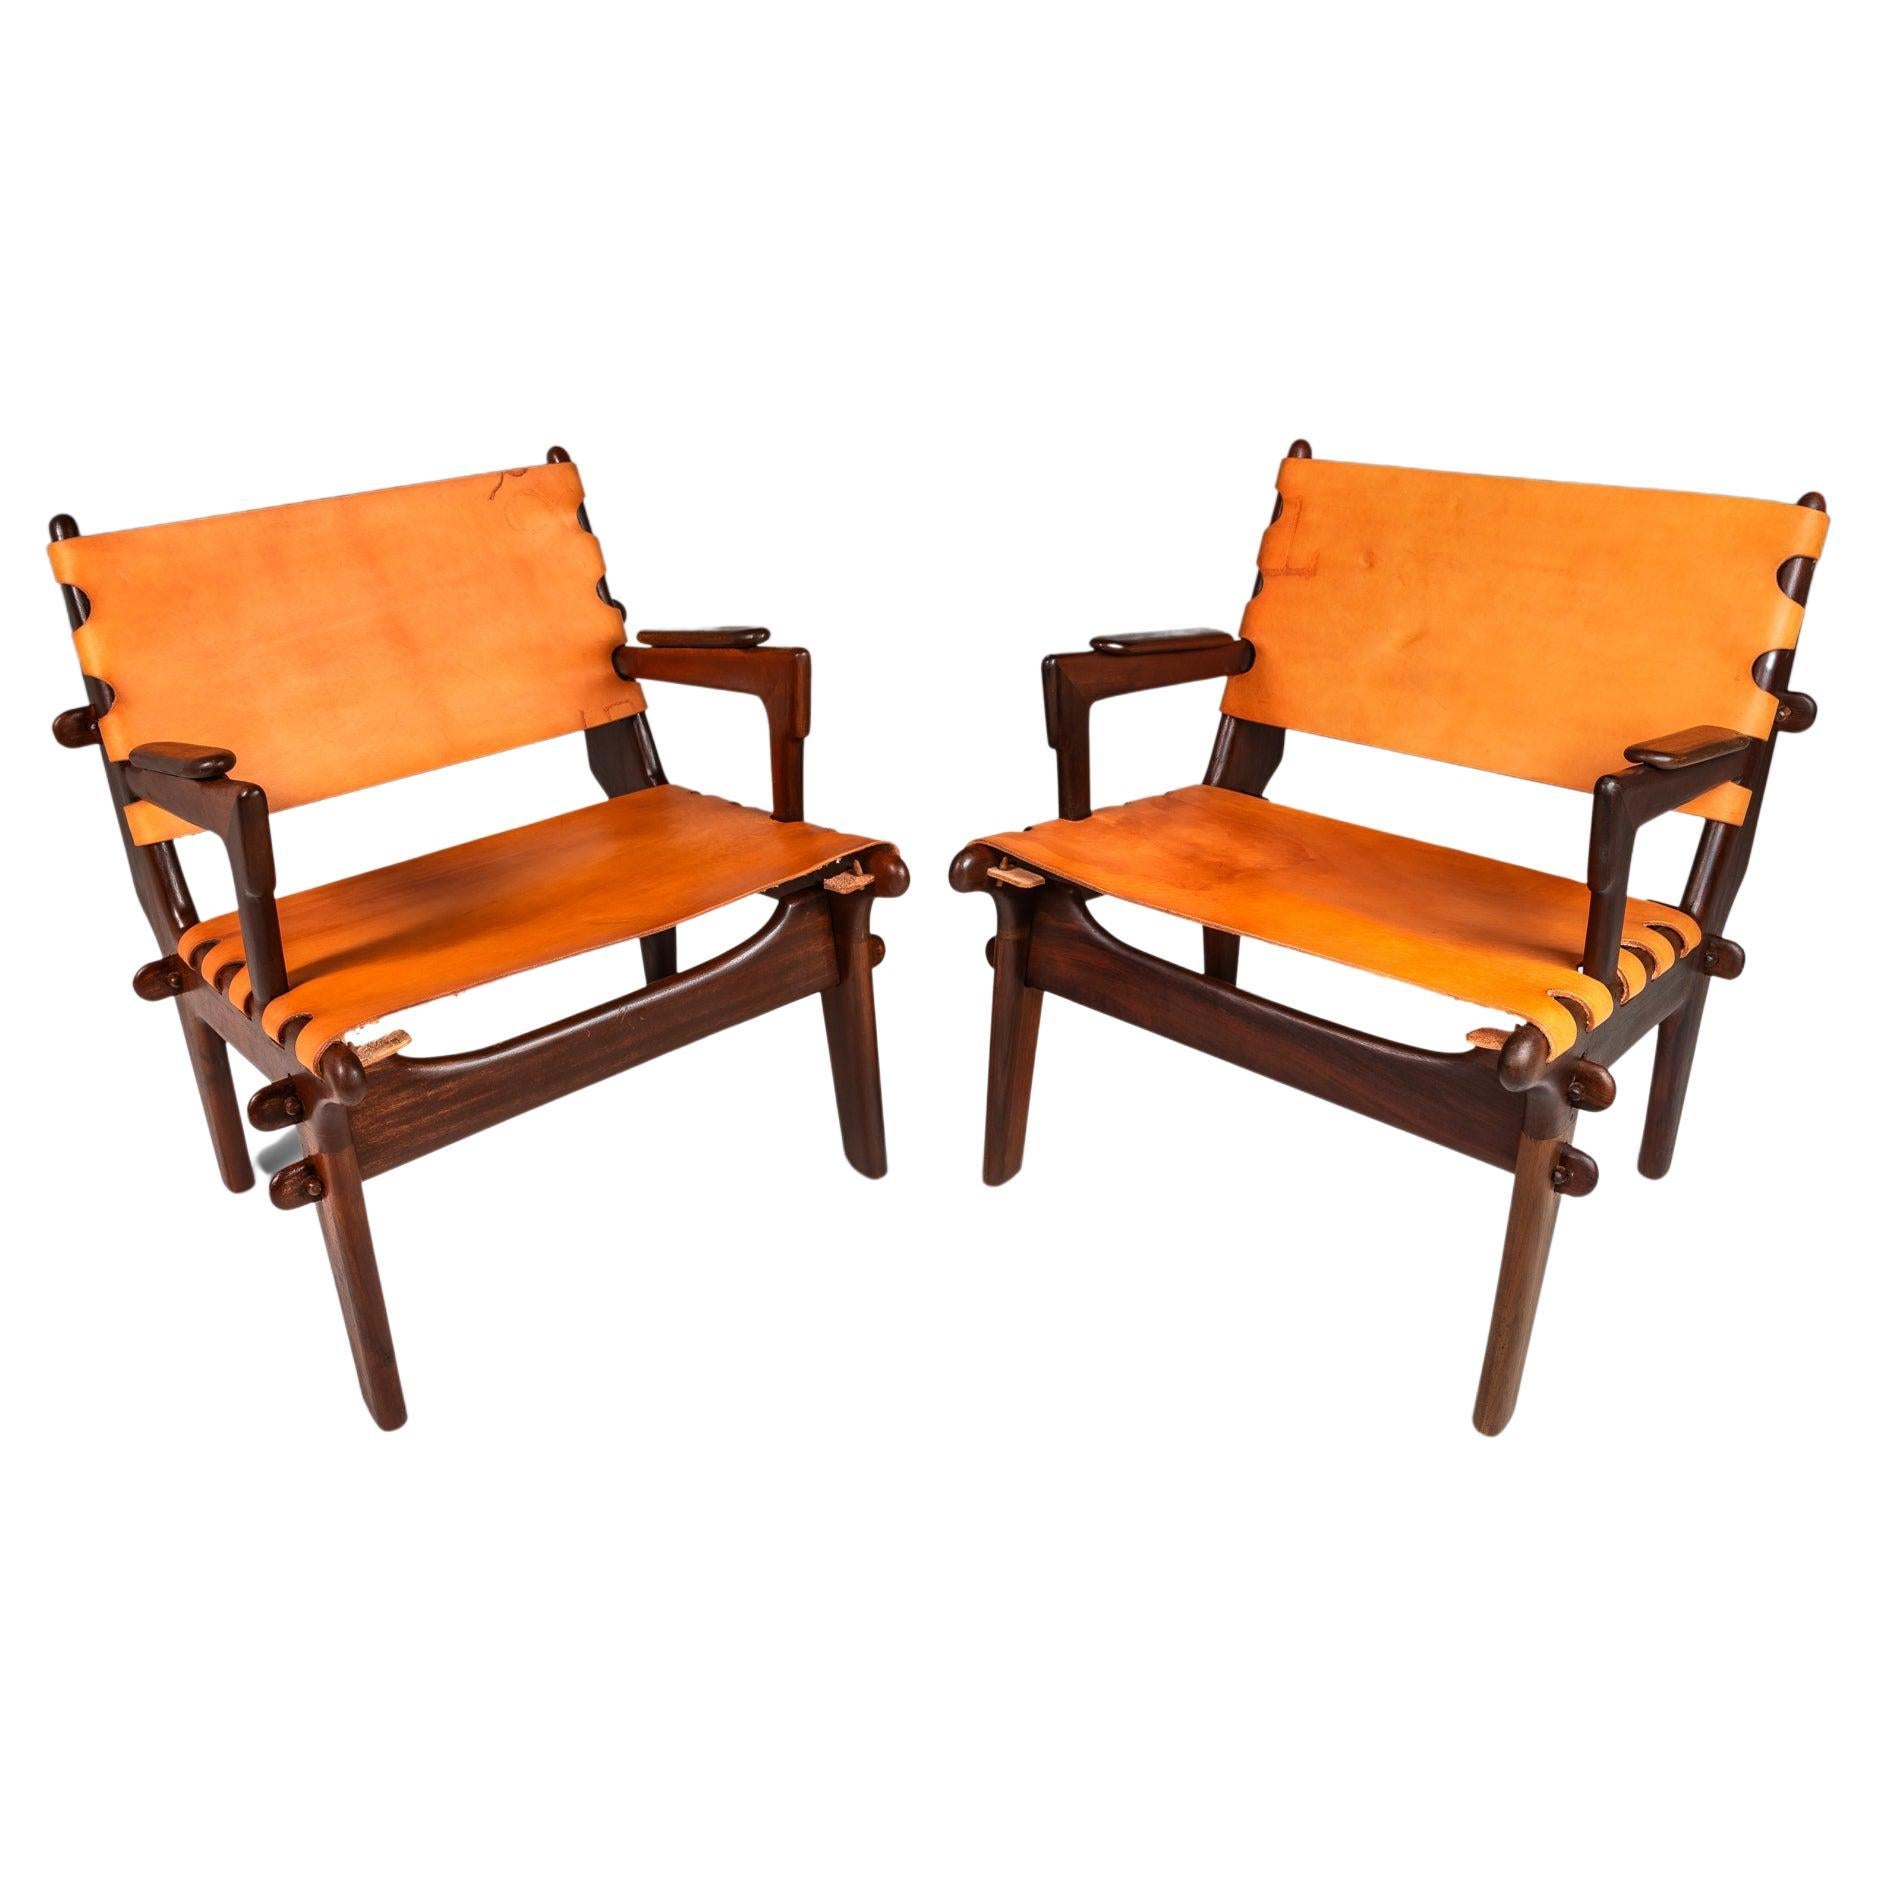 Ensemble de 2 chaises longues en cuir tolé par Angel Pazmino, Ecuador, c. 1960's.